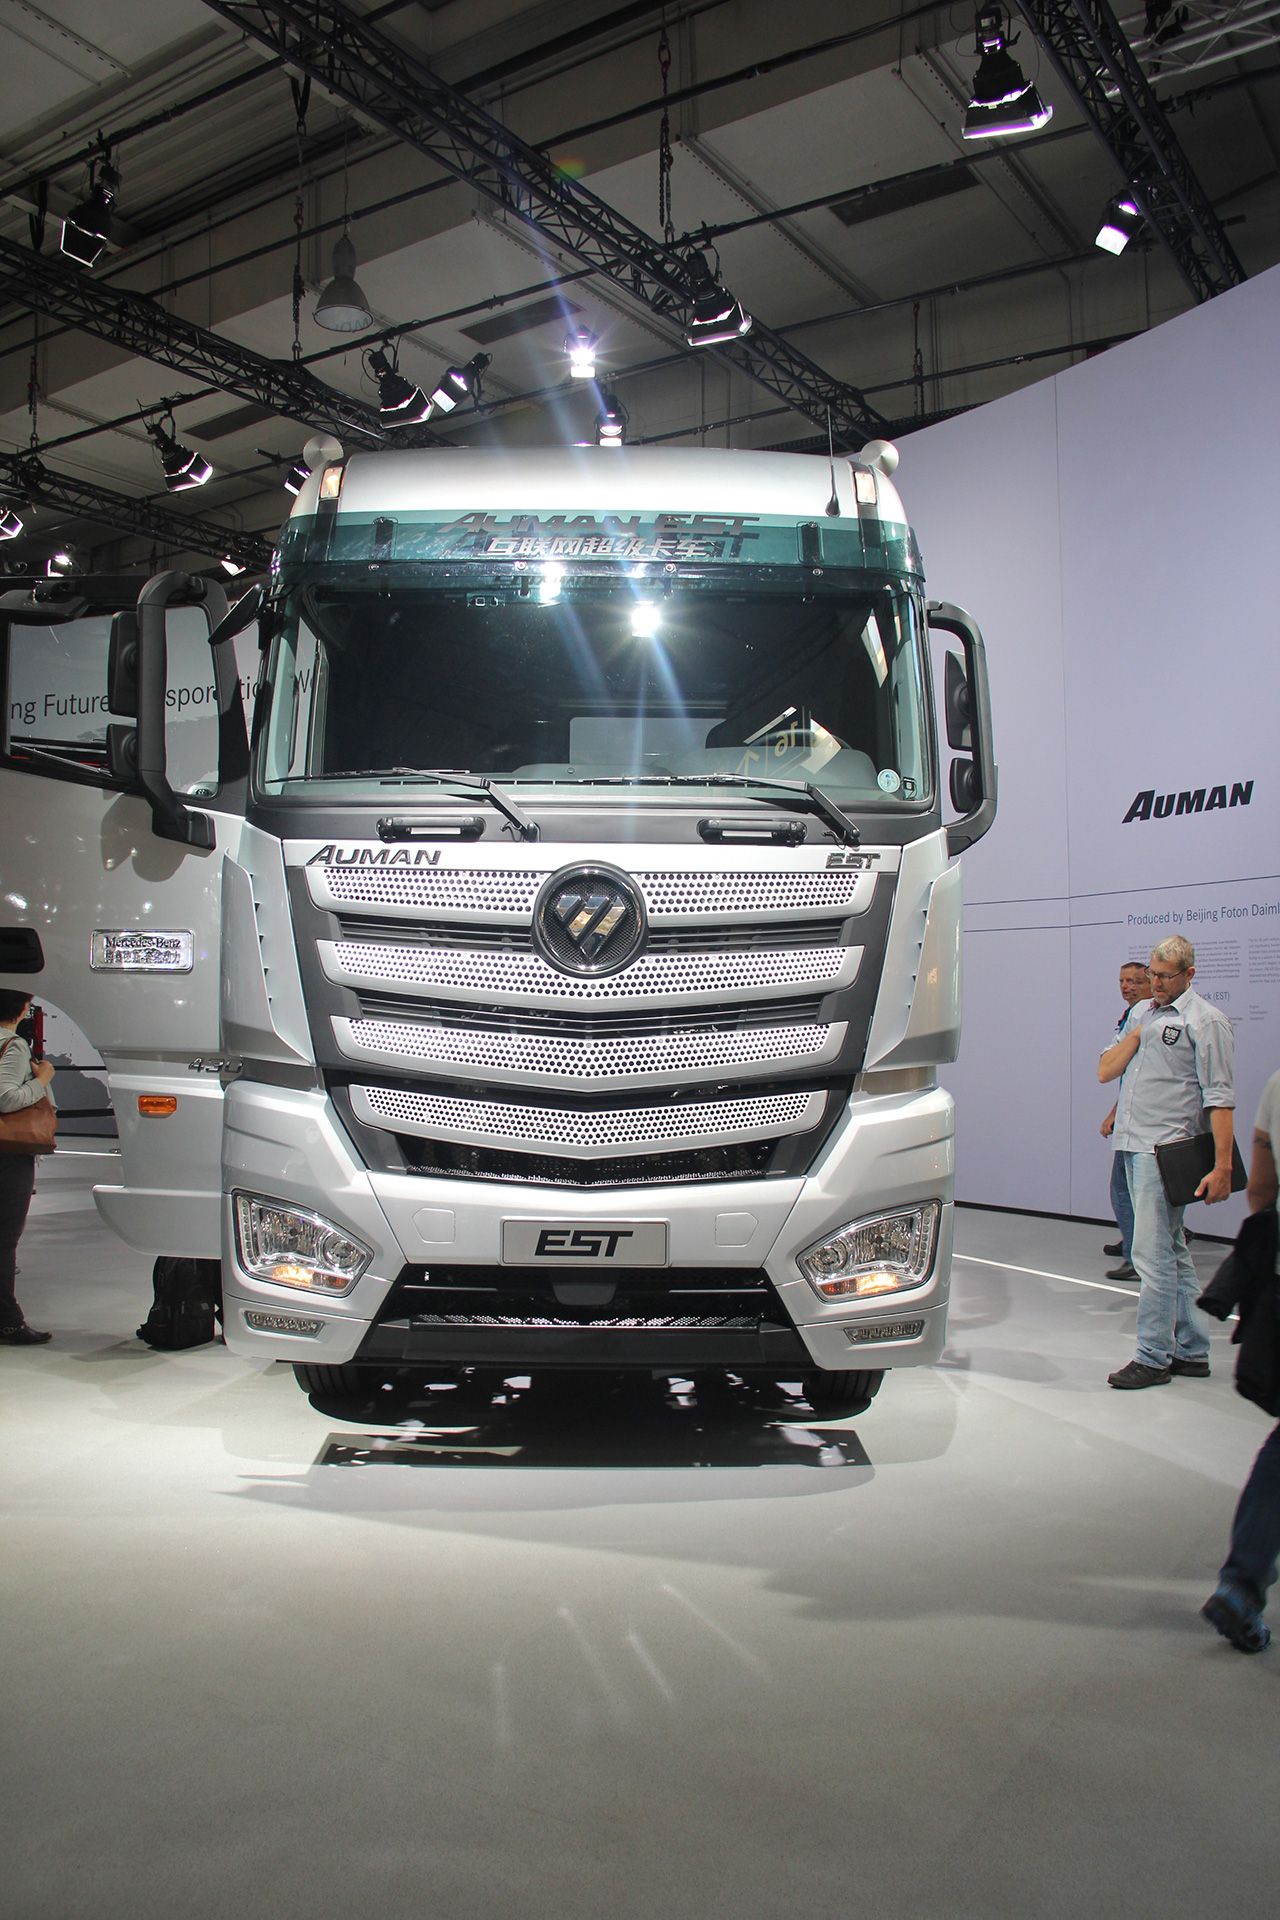 Компания FOTON представила новое поколение грузовых автомобилей на Грузовом Автосалоне IAA 2016 в Ганновере.